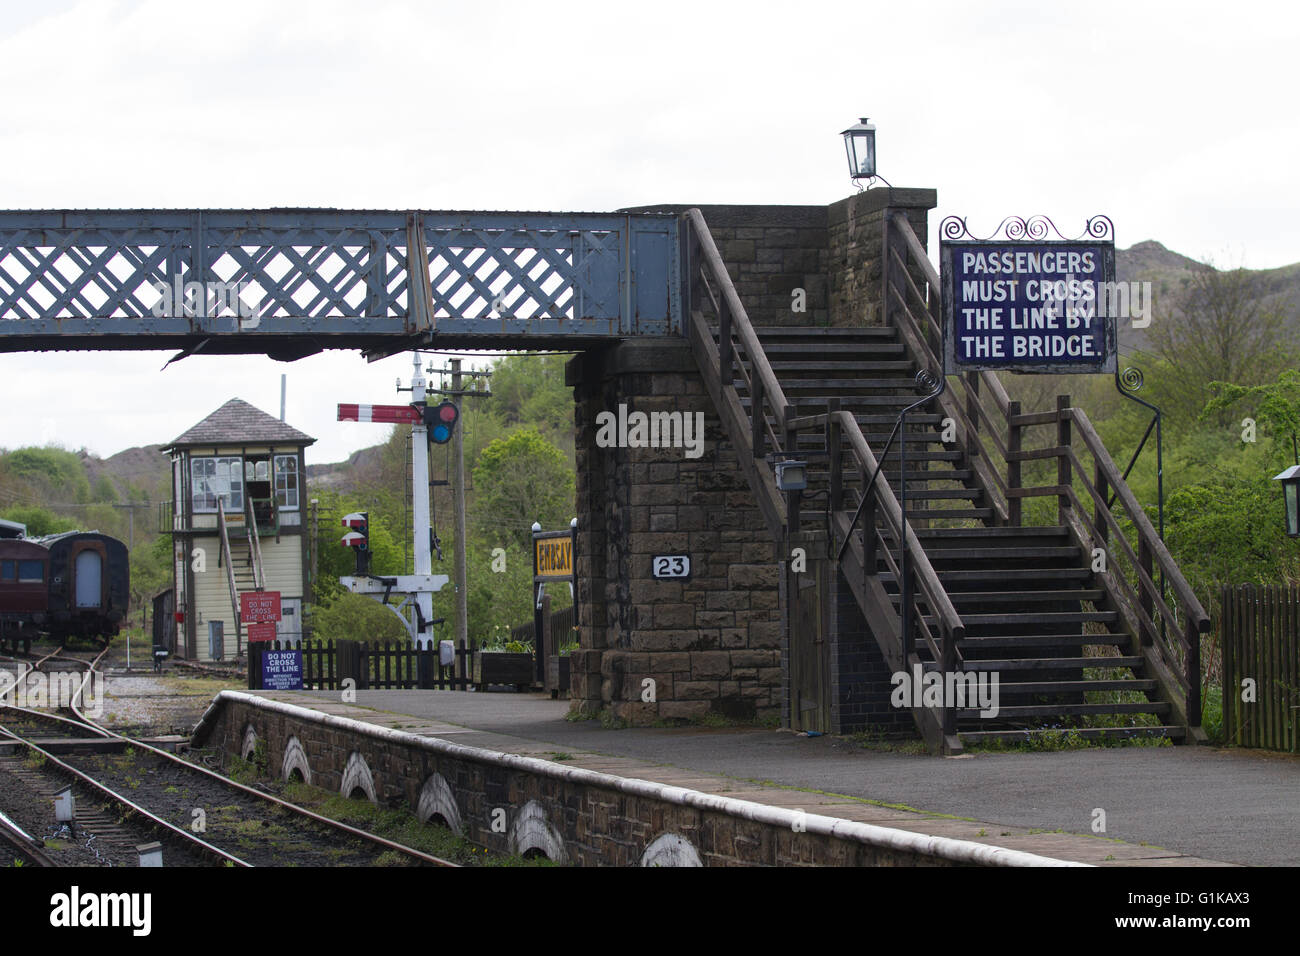 La estación en Embsay Embsay en las conservas y Bolton Abbey Railway cerca de Skipton restaurado de pasarela y detalles de época Foto de stock